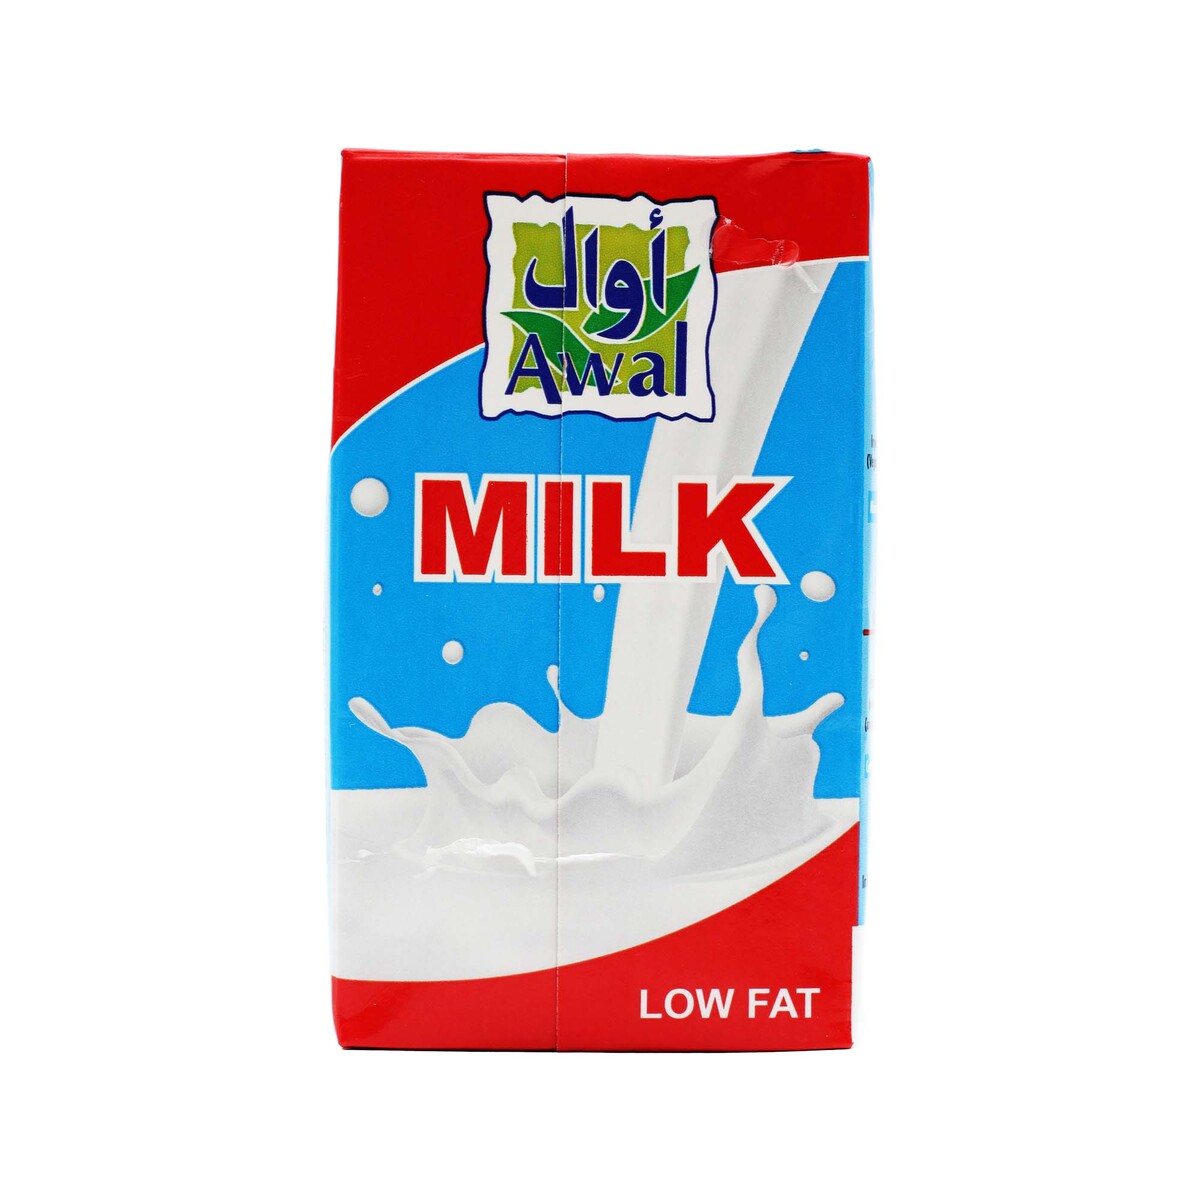 Awal UHT Milk Low Fat 6 x 250ml